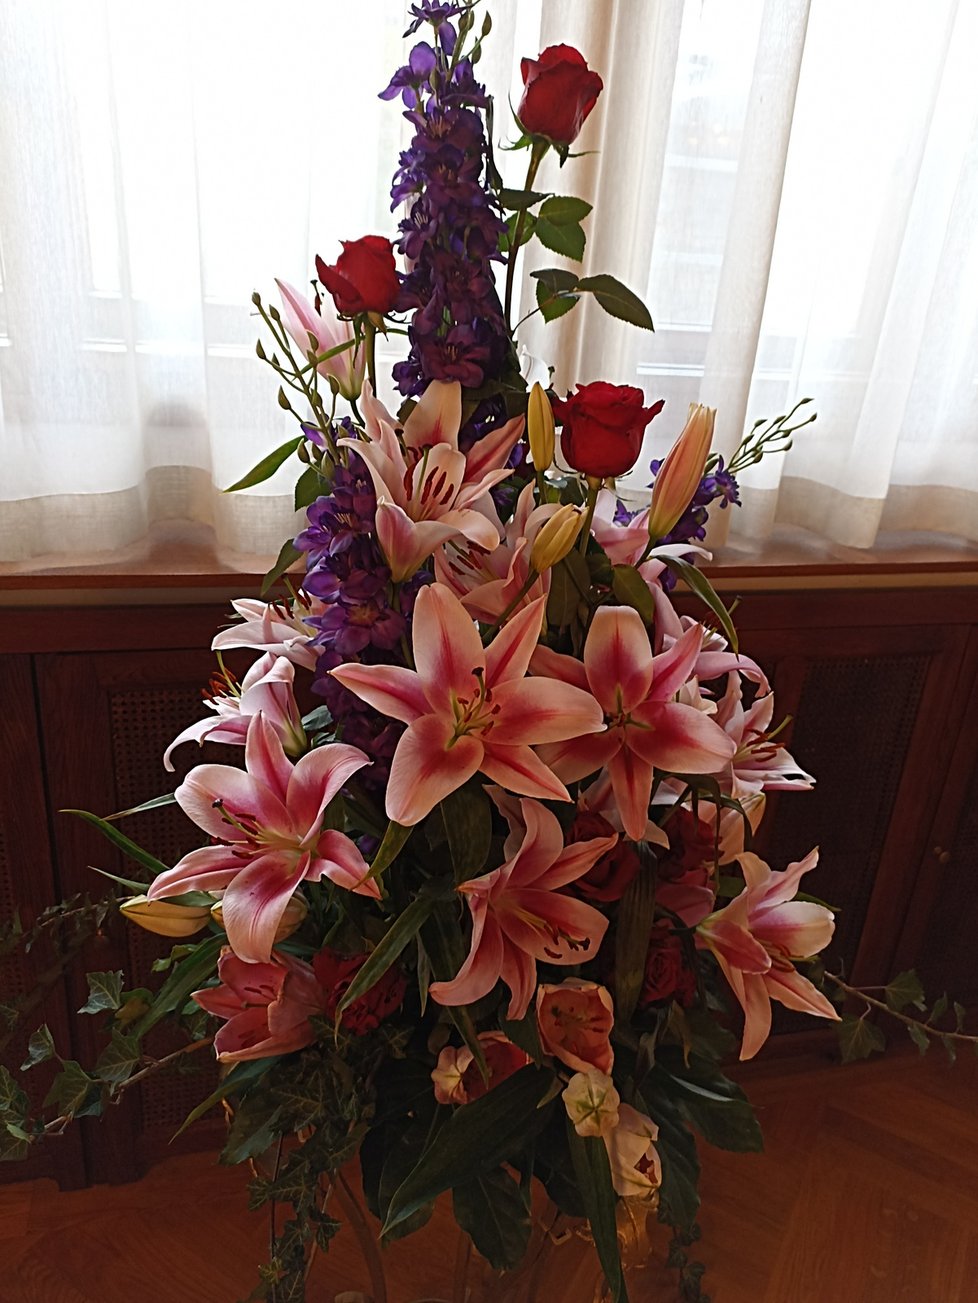 Nádherné květinové aranžmá ve vile Stiassni je dílem floristy Slávka Rabušice.